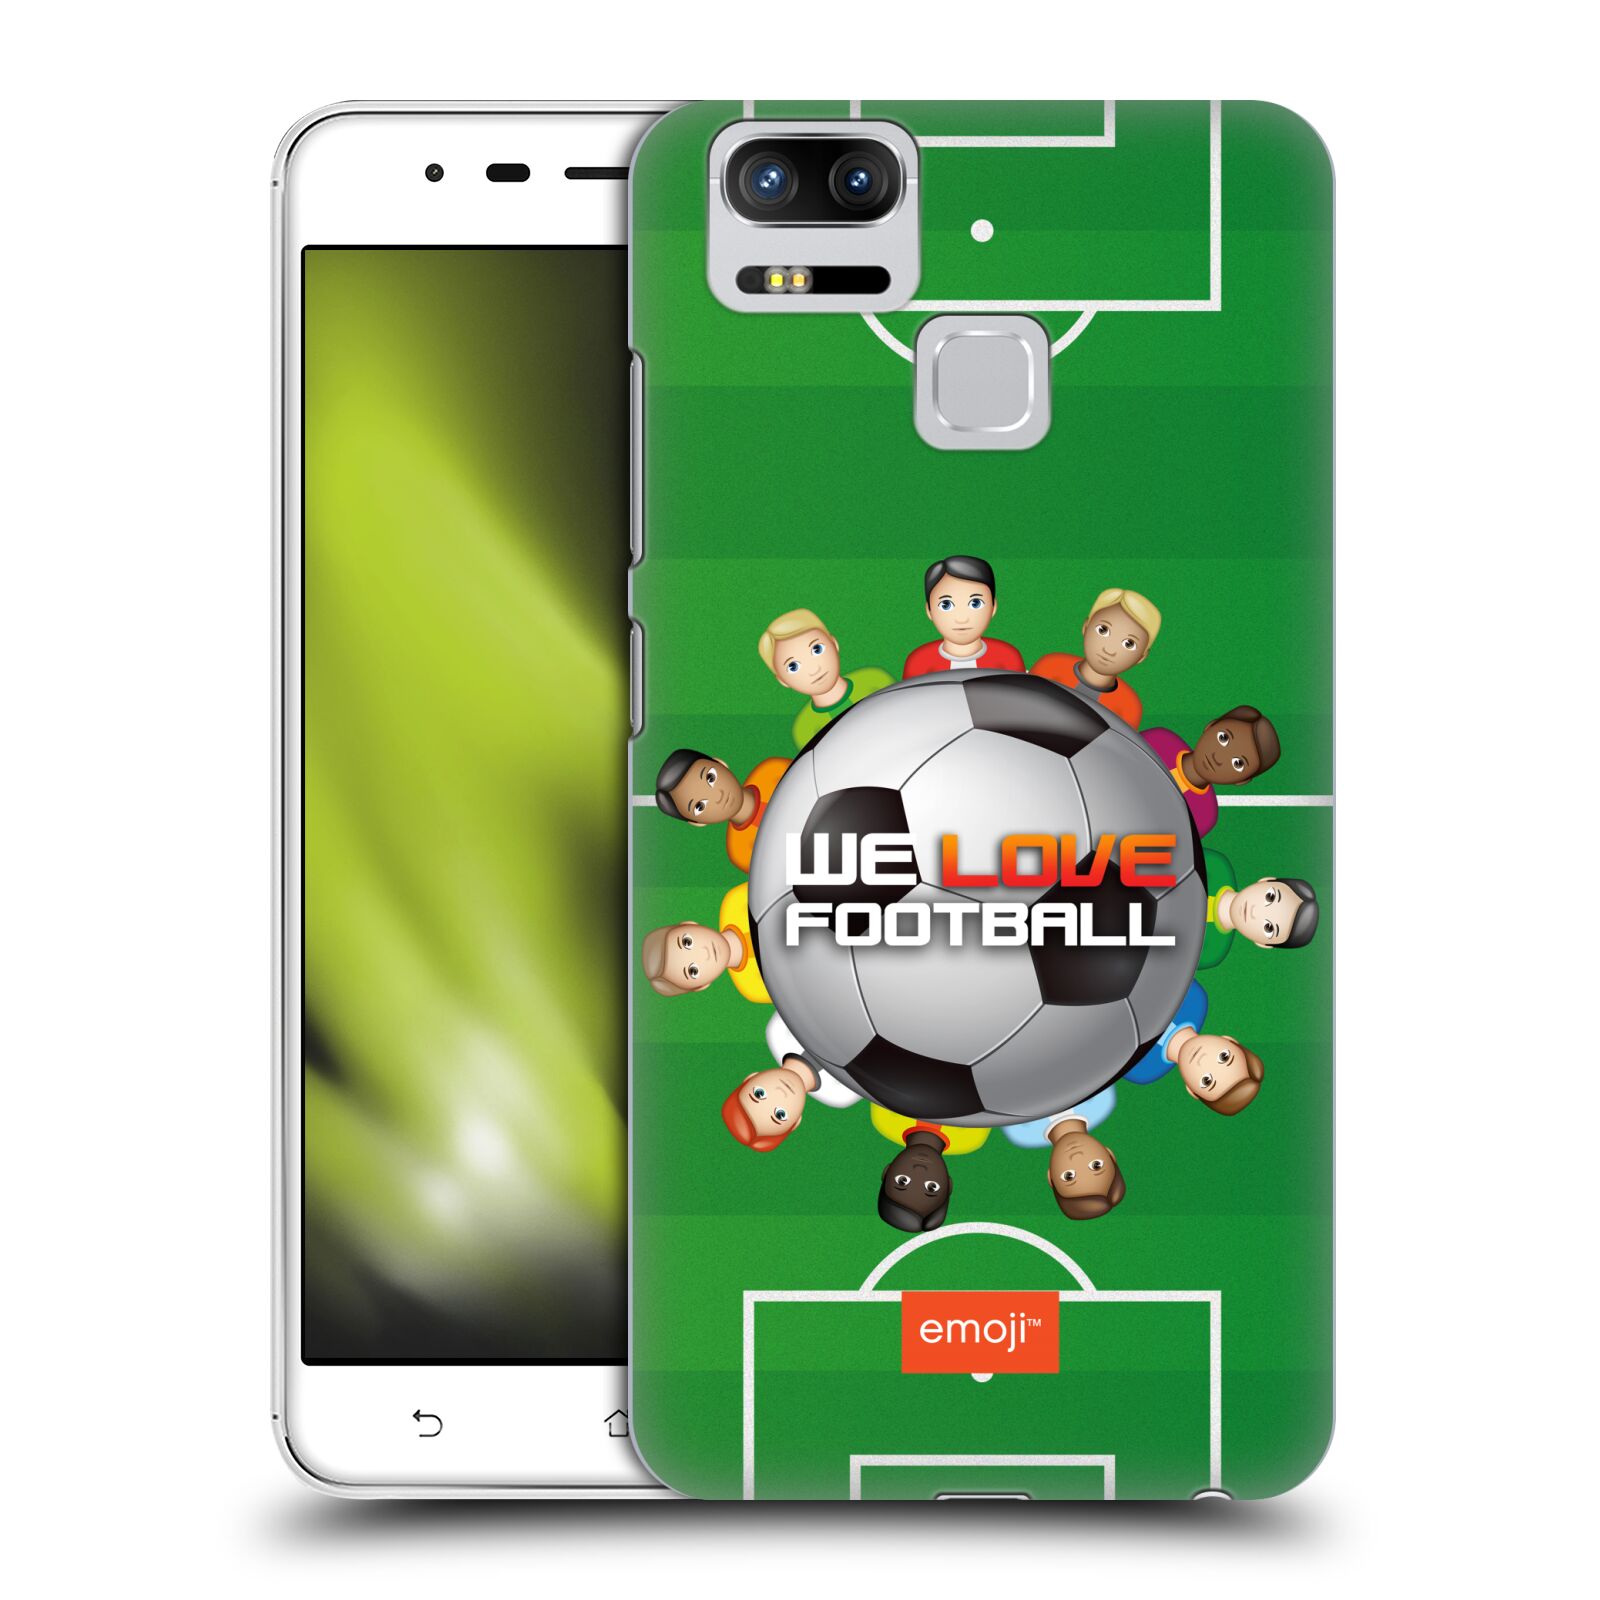 HEAD CASE plastový obal na mobil Asus Zenfone 3 Zoom ZE553KL smajlíci oficiální kryt EMOJI vzor fotbal MILUJEME FOTBAL